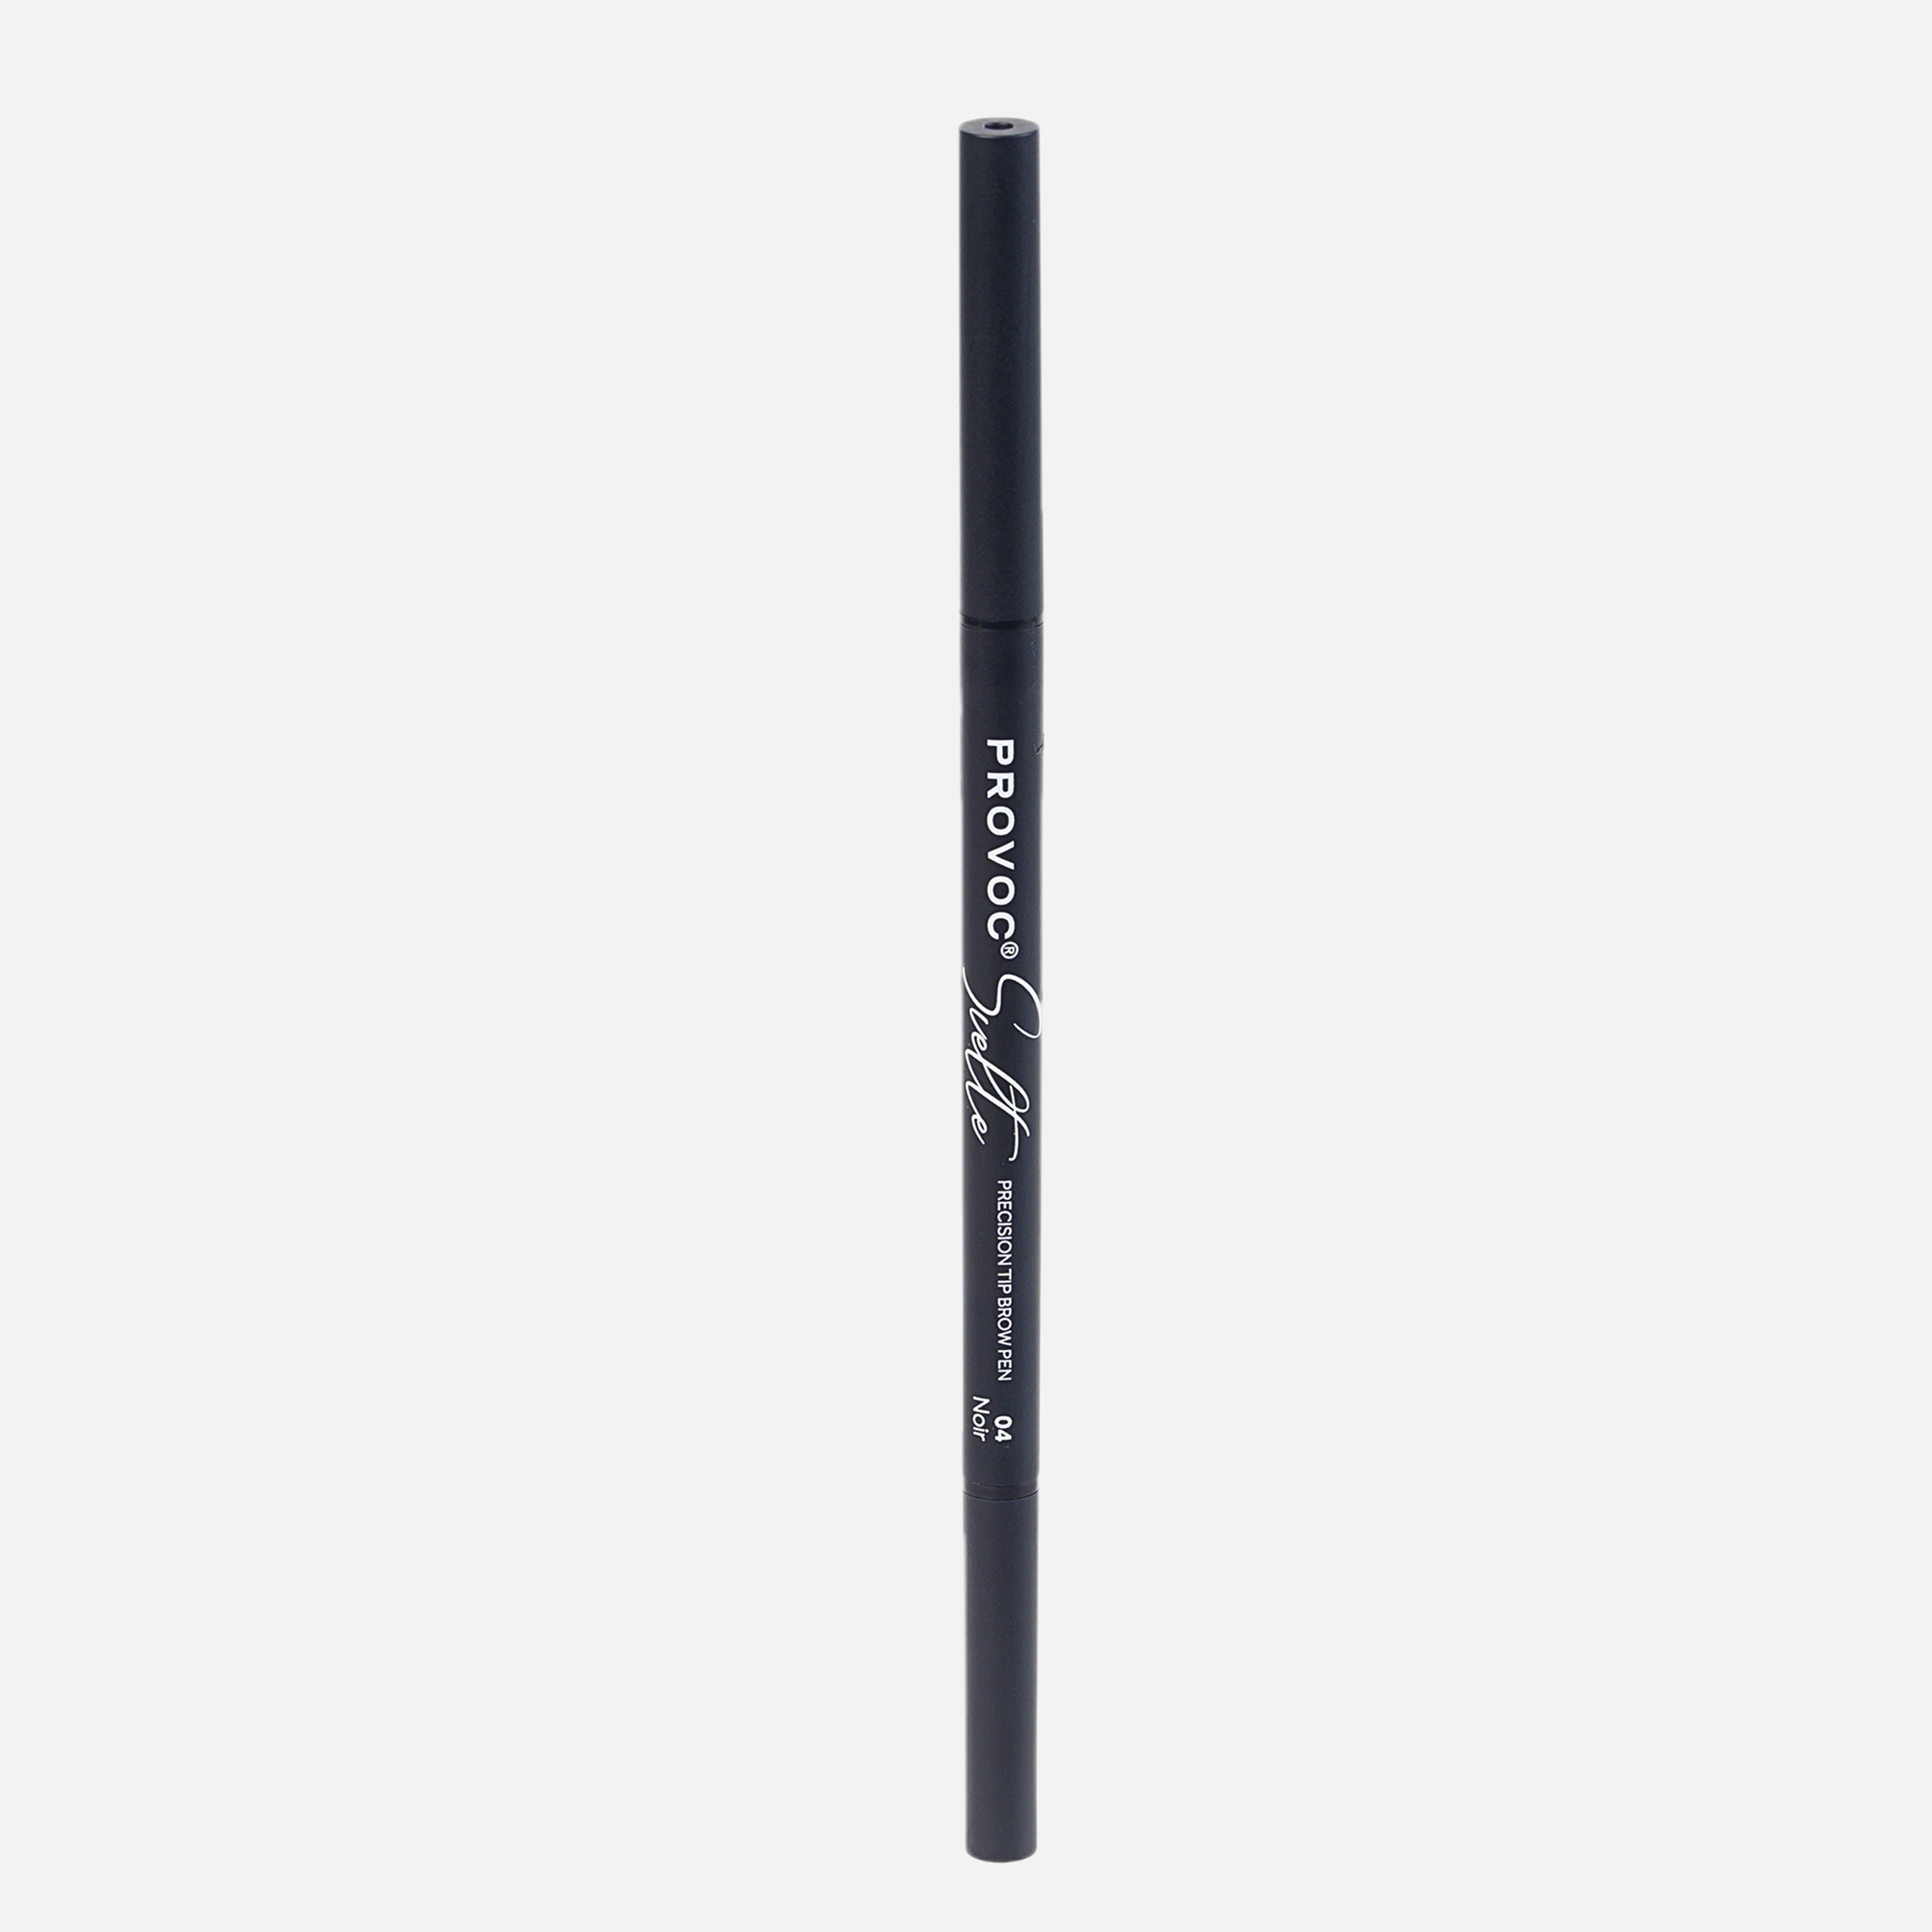 Ультратонкий карандаш для бровей Sawaya International LLC 04 брюнет